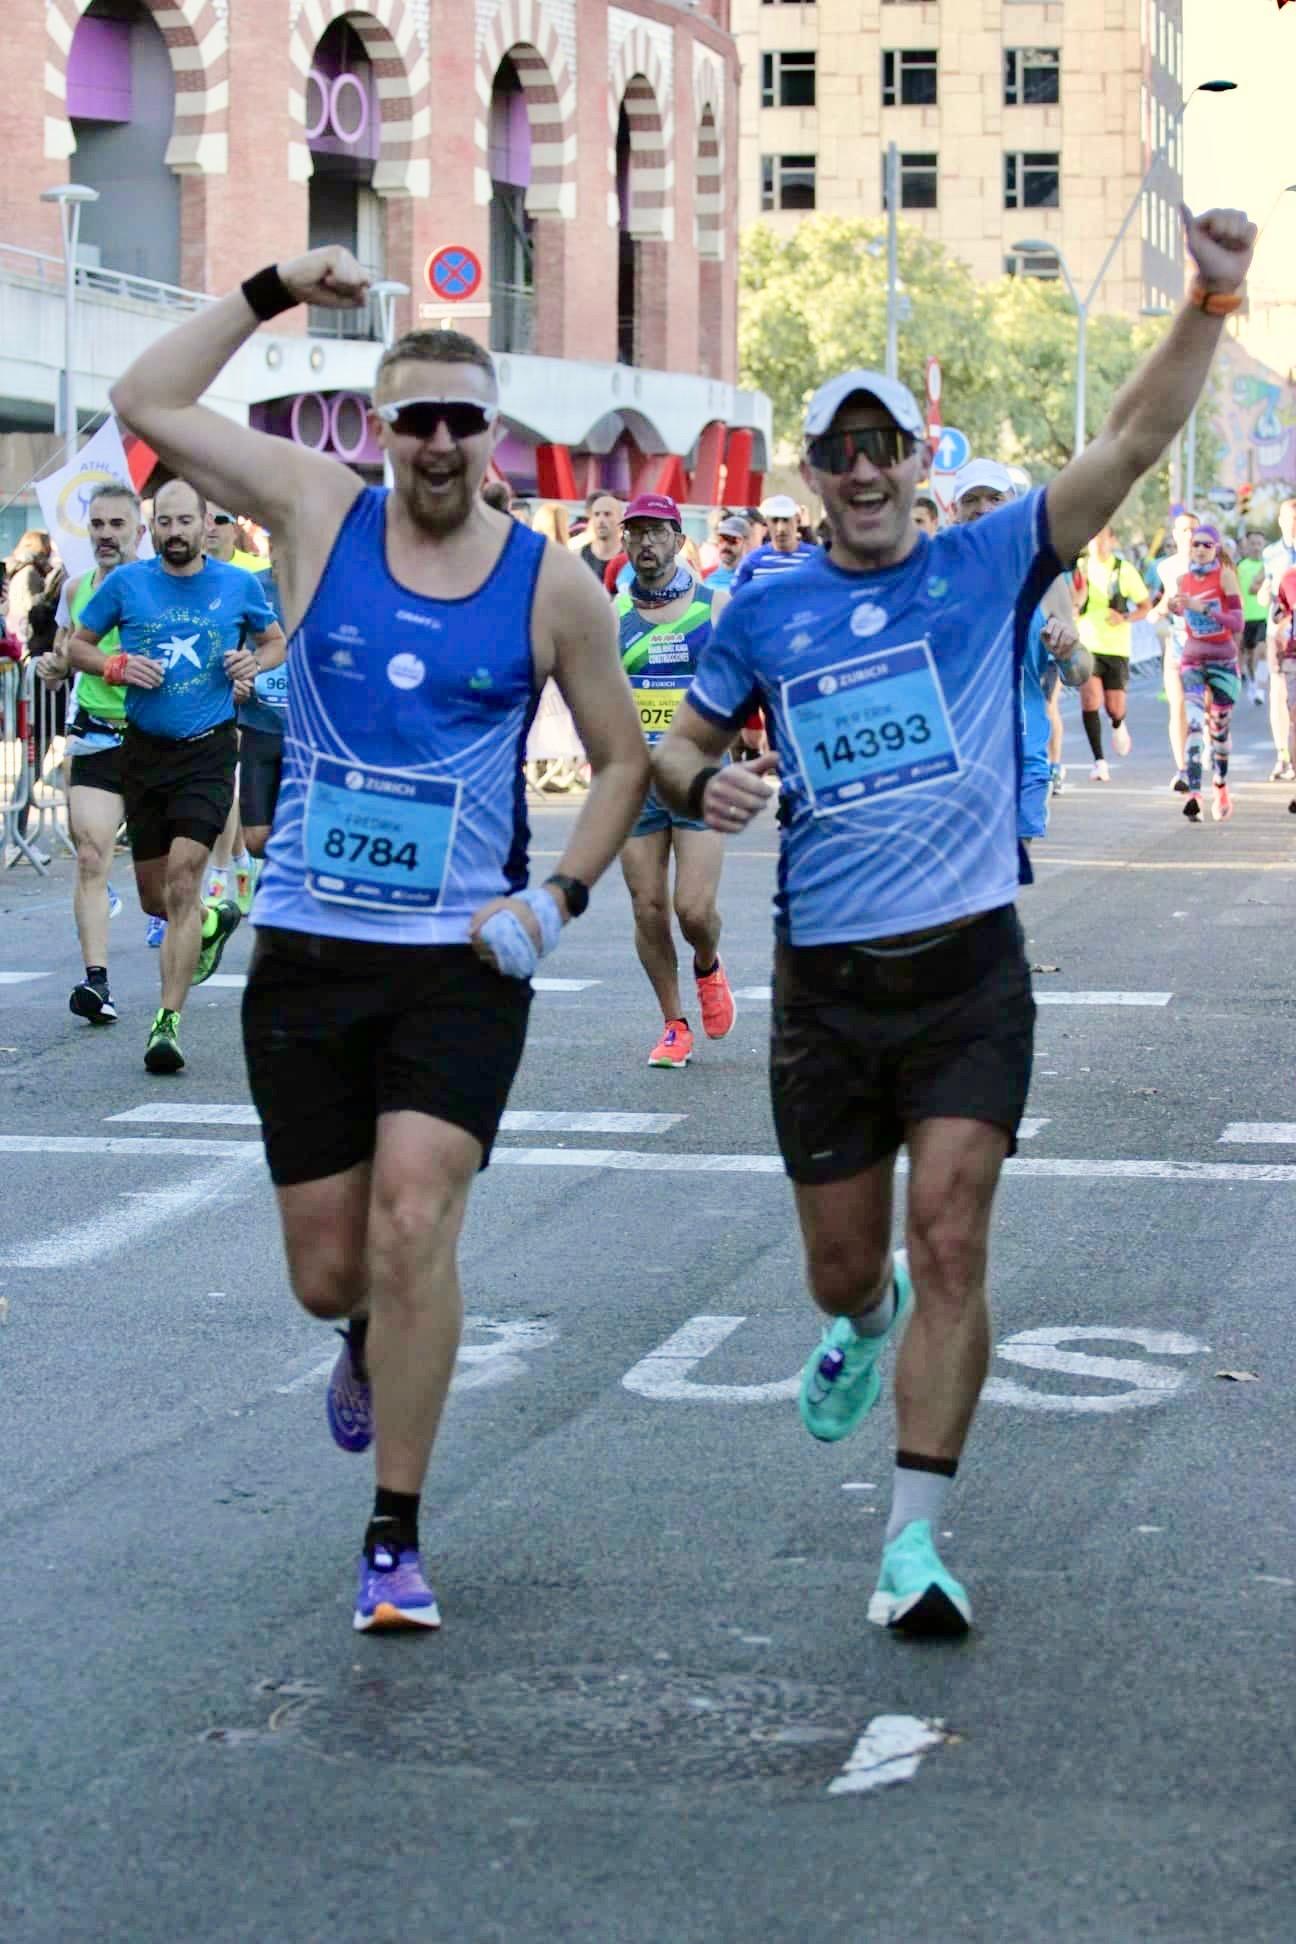  Fredrik Høiland og Per Erik Haga løper over målstreken sammen. Begge setter personlige rekorder i maraton.